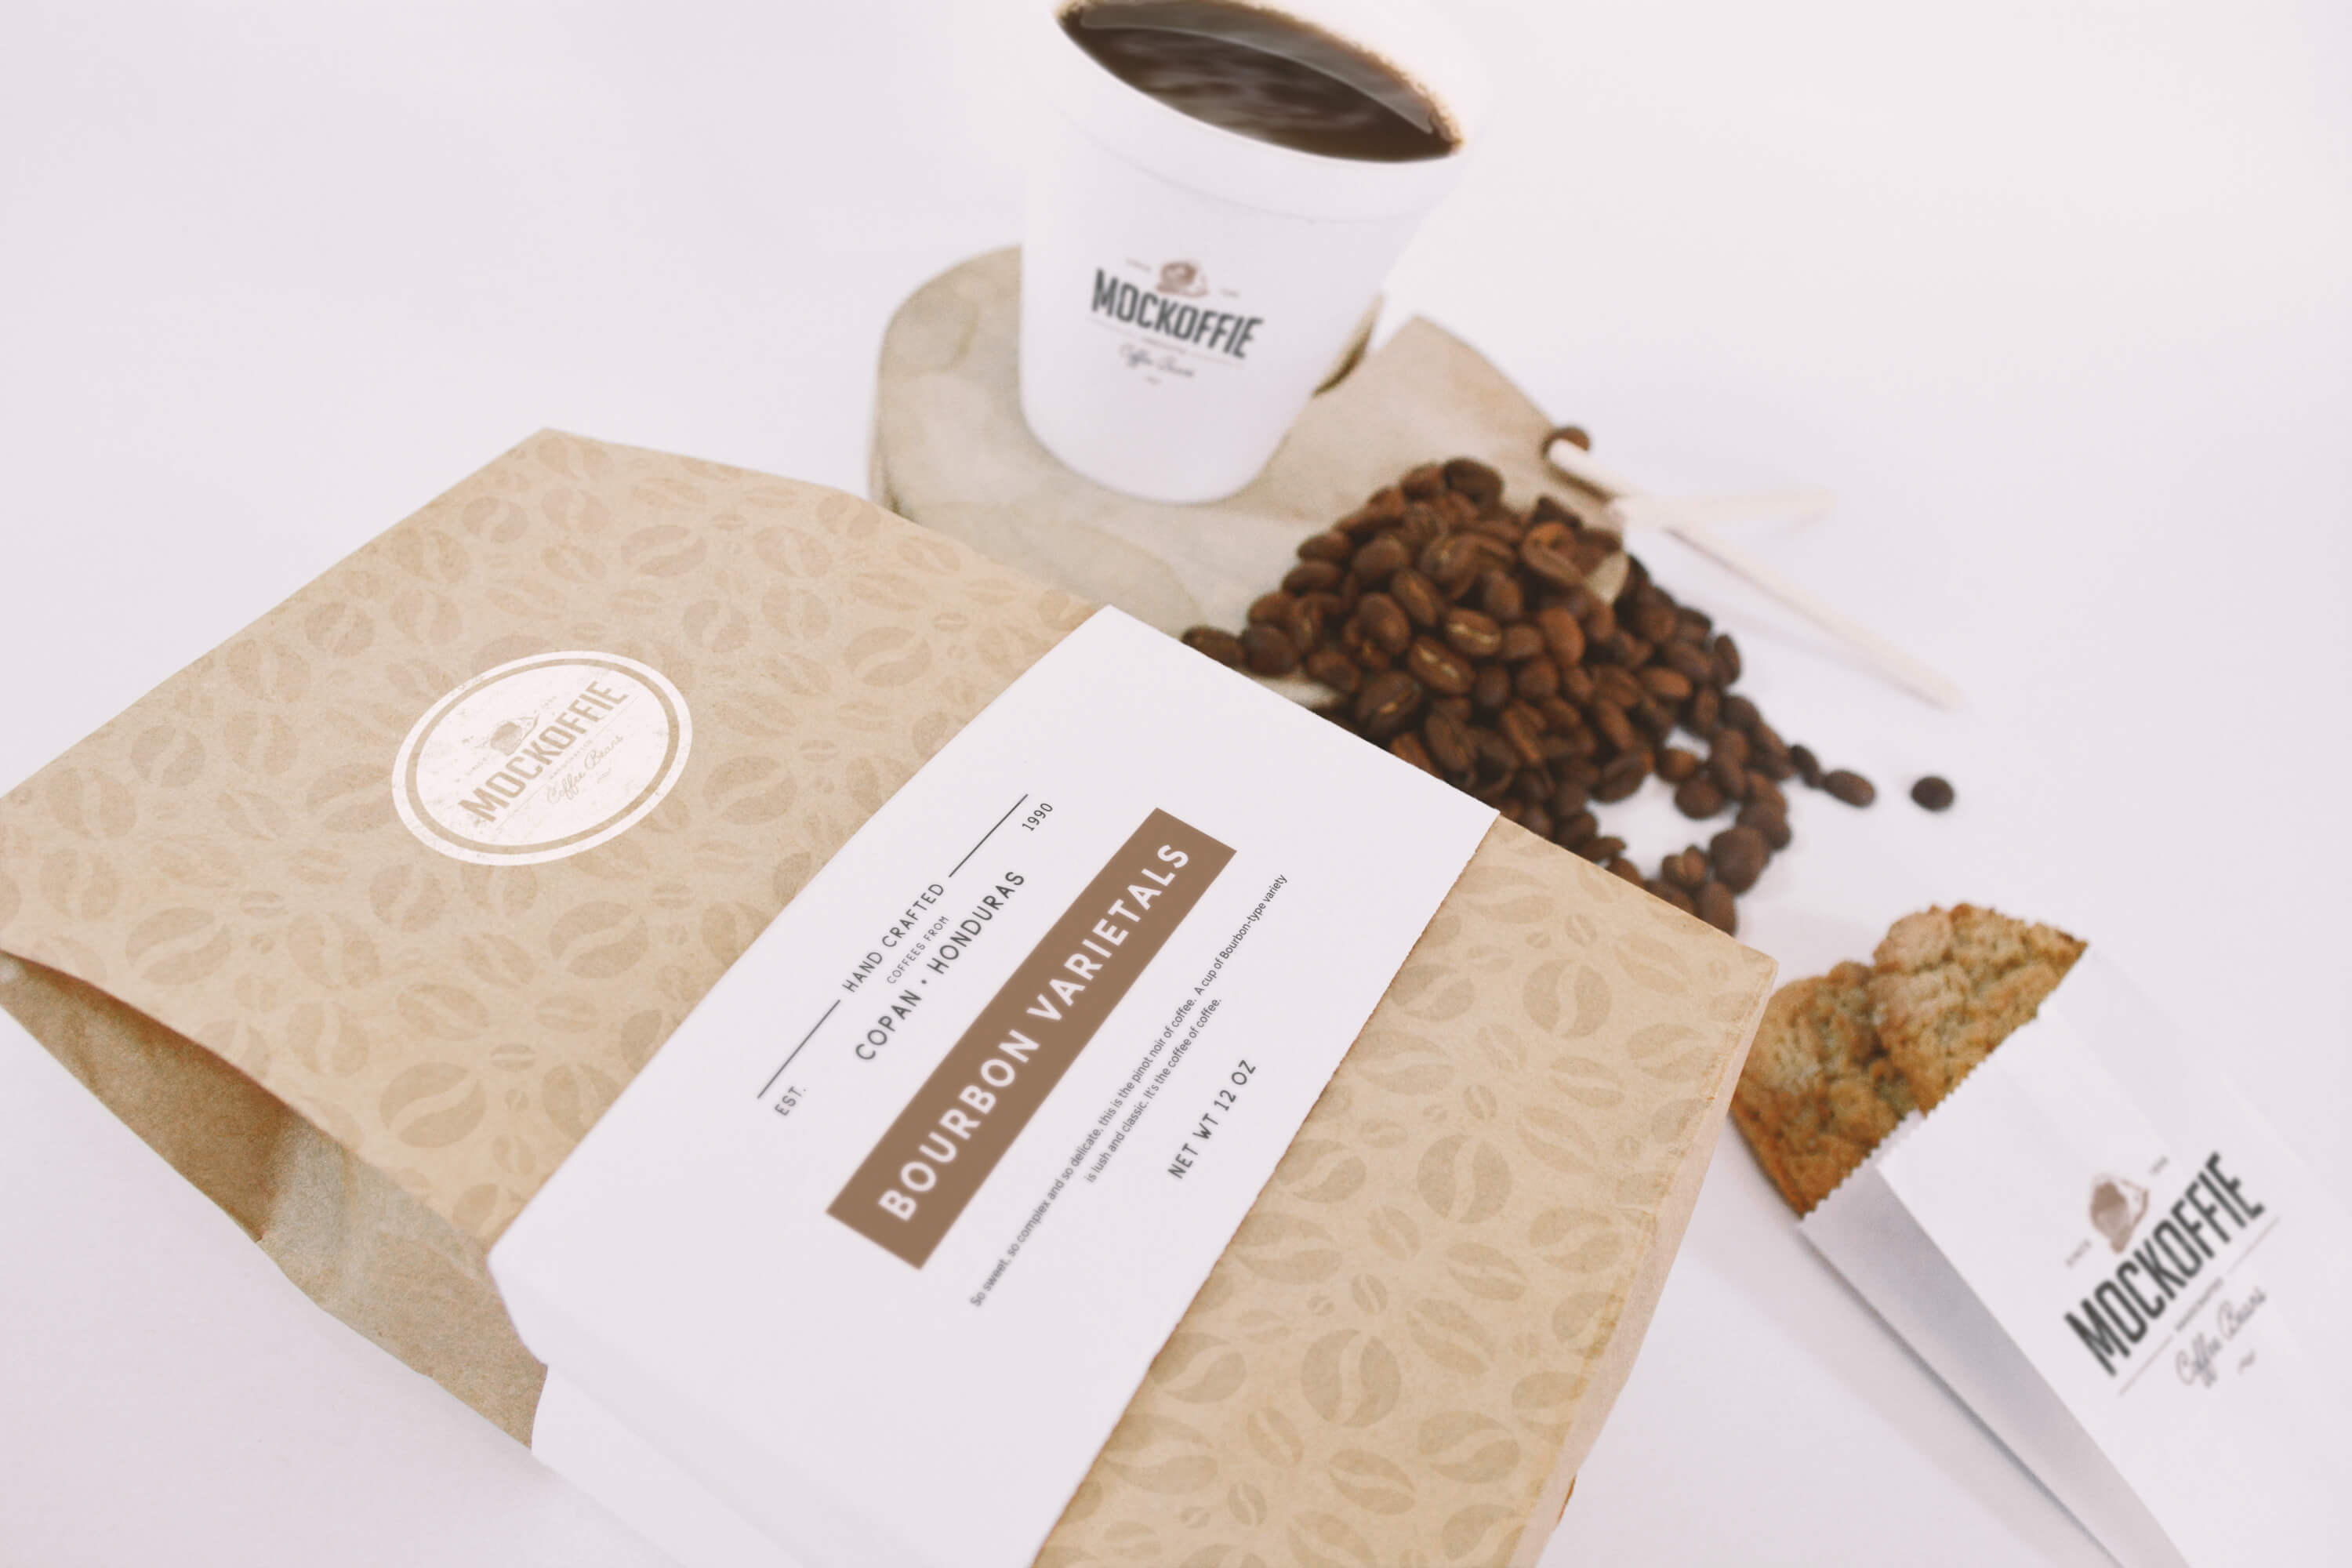 咖啡豆纸袋和咖啡纸杯包装设计透视俯视图样机 Coffee Bag and Cup Mockup Perspective Top View插图